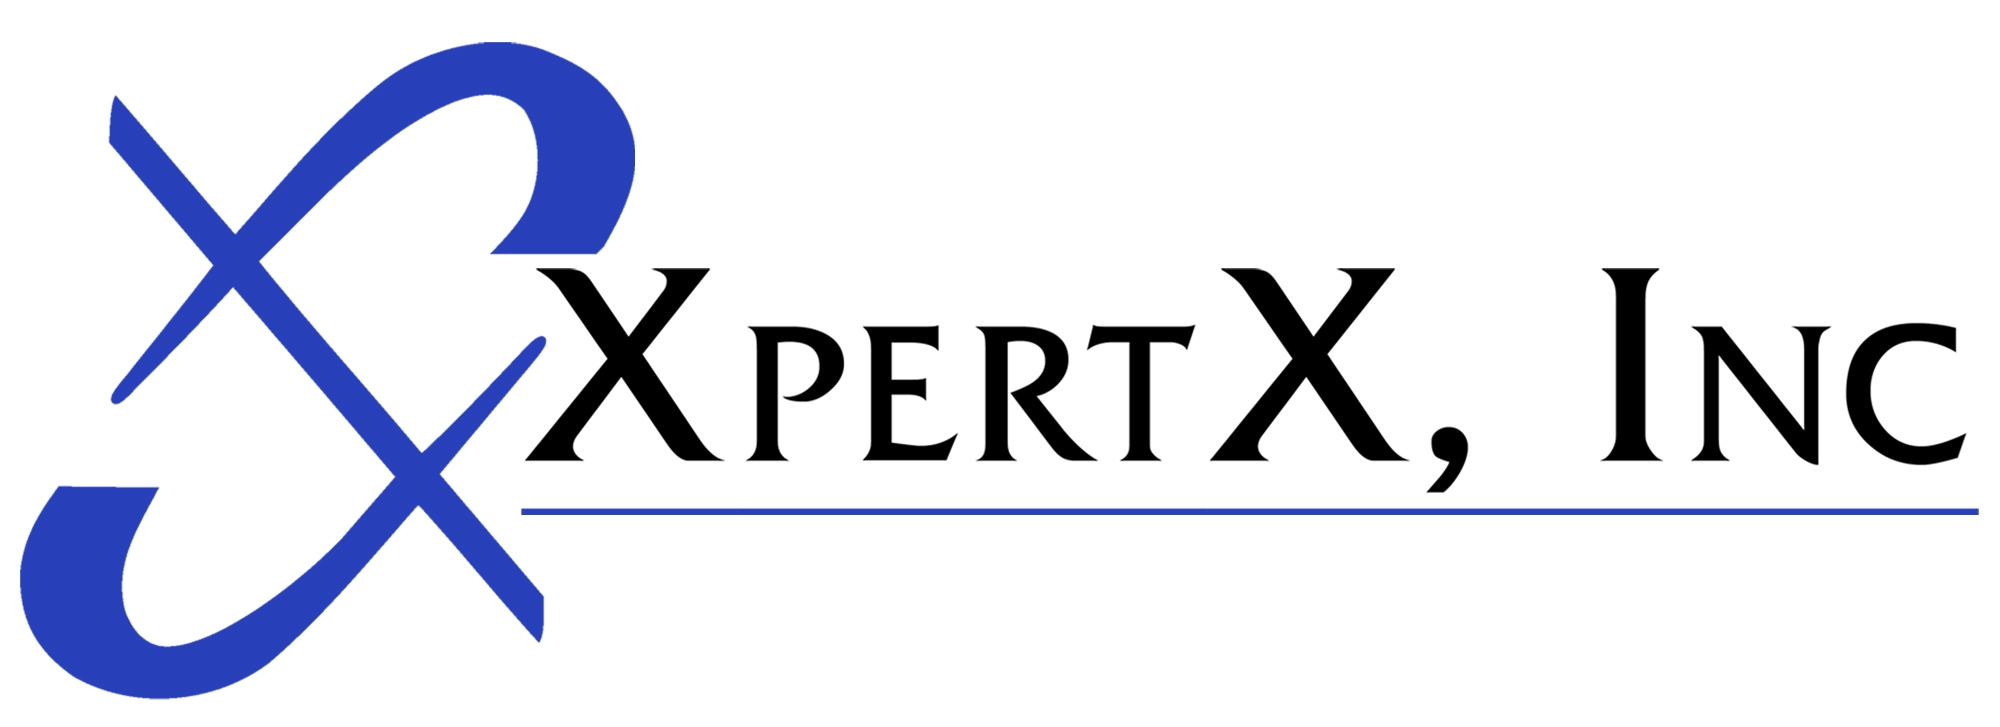 XpertX, Inc. Logo